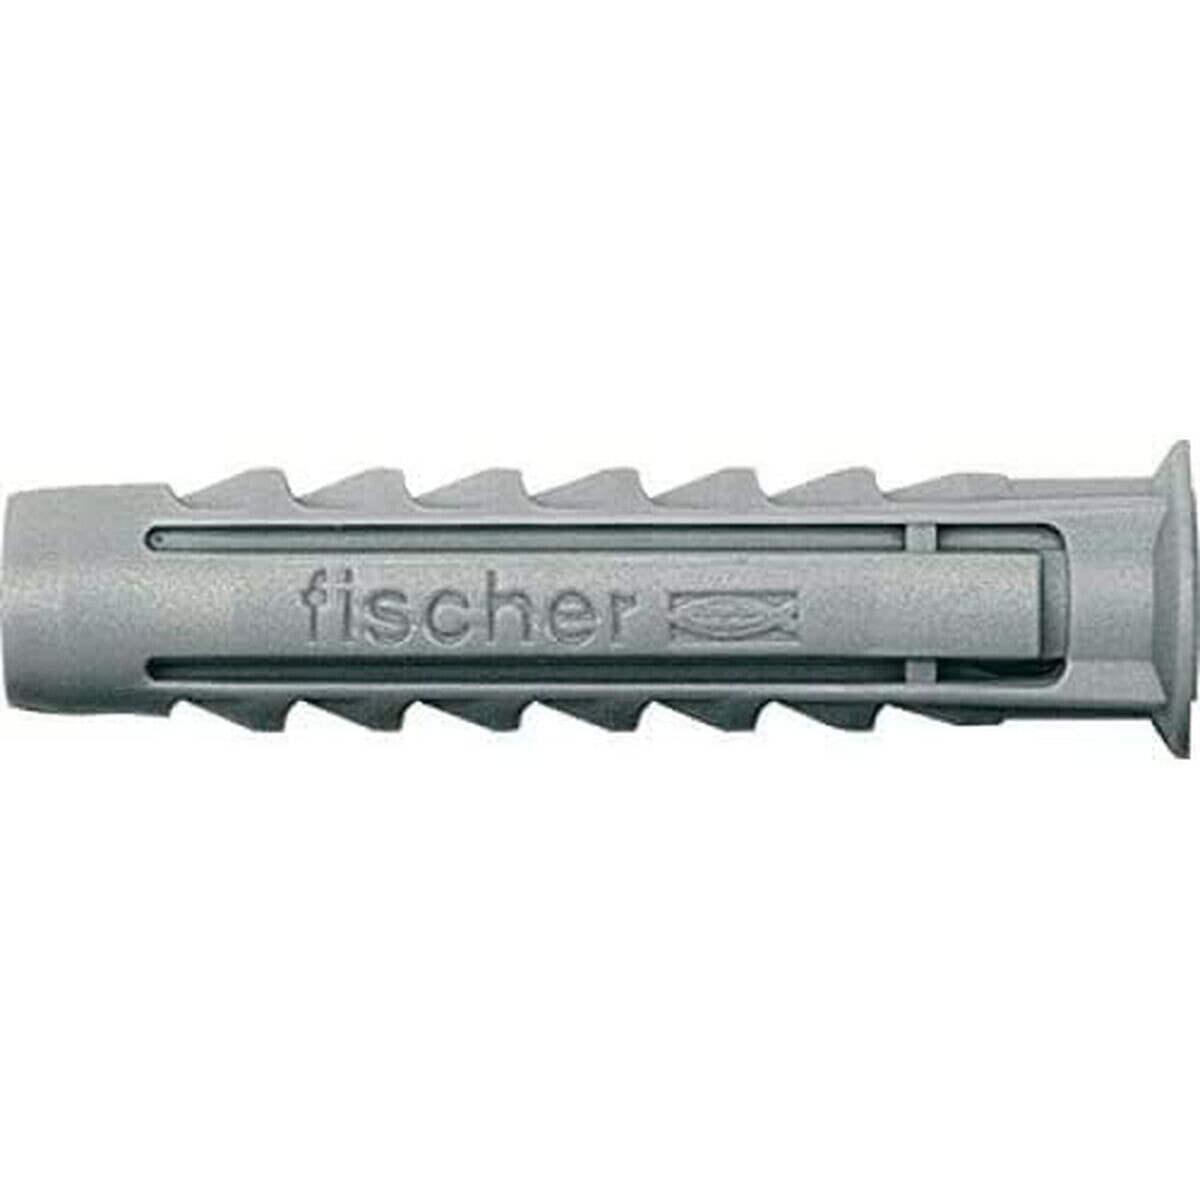 Шипы Fischer SX 553436 10 x 50 mm Нейлон (30 штук)